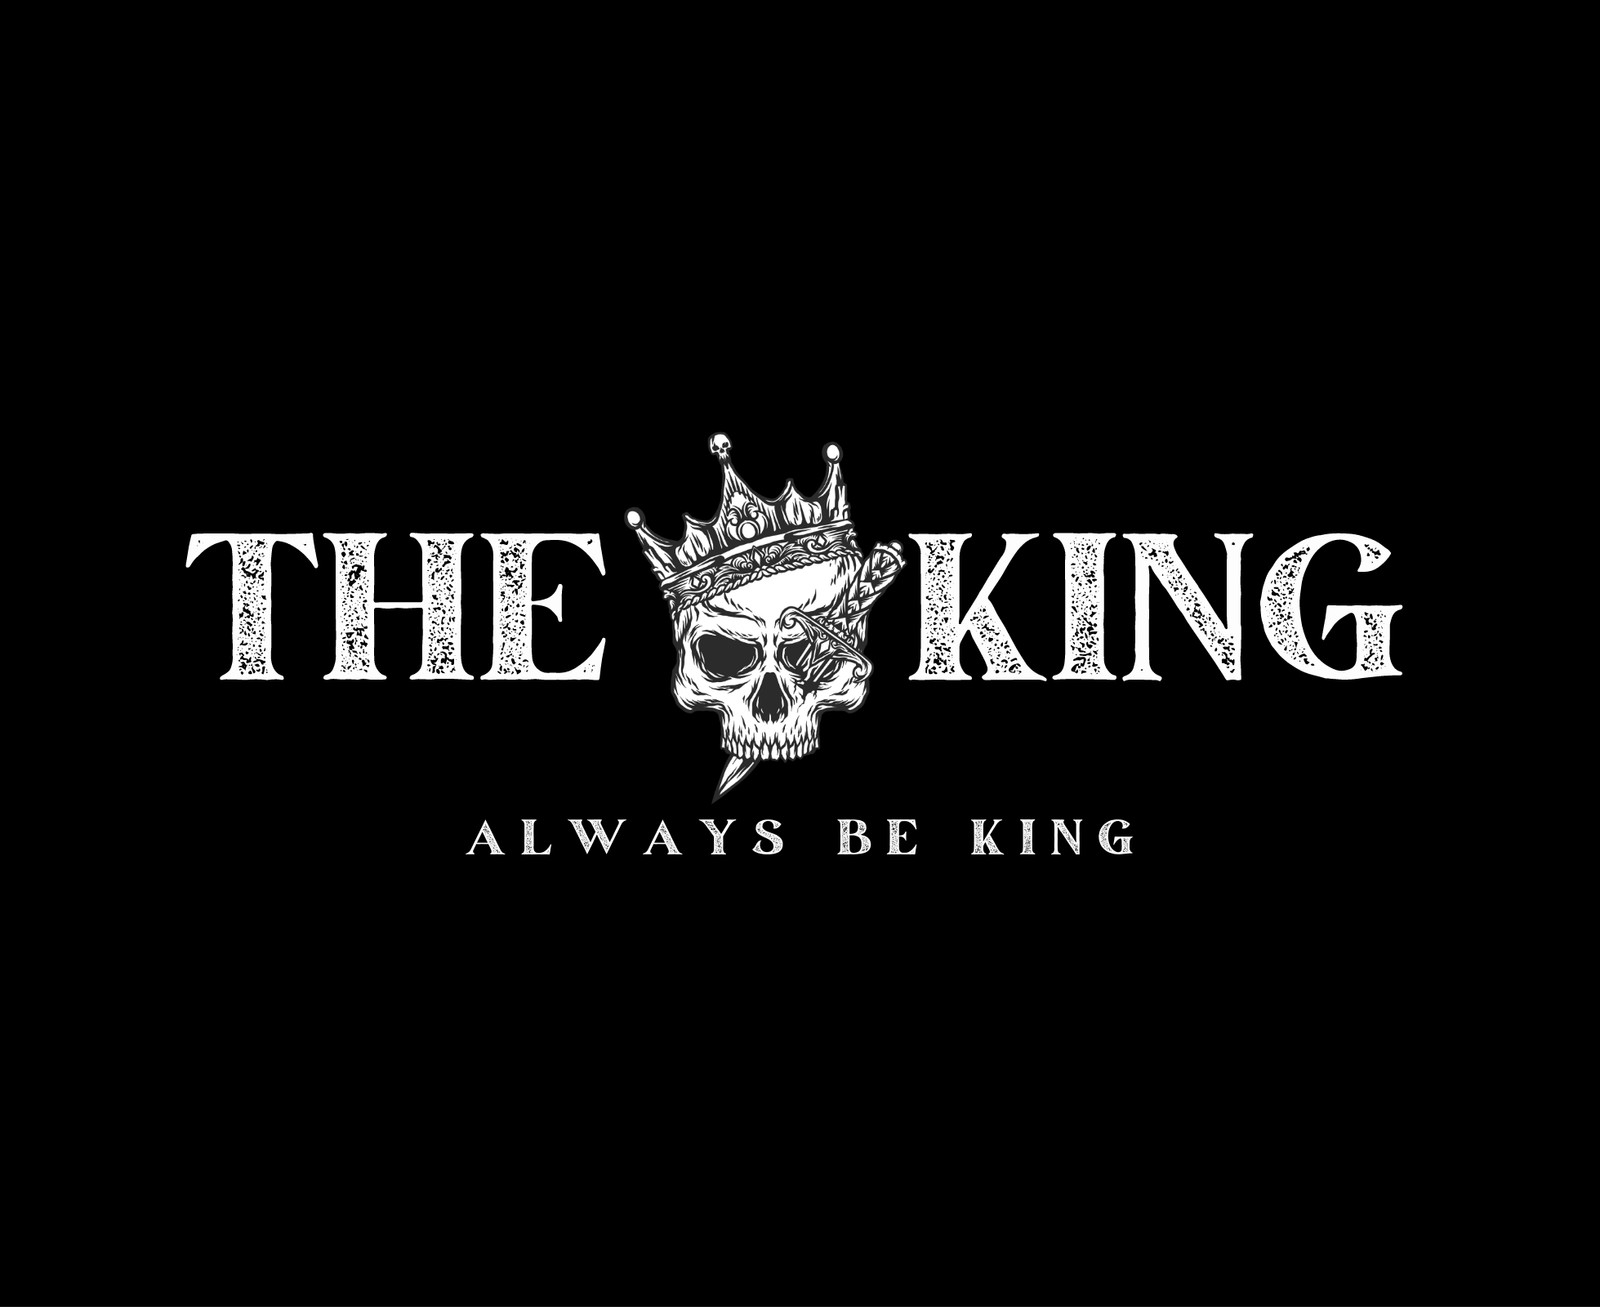 King text logo Stock Photos, Royalty Free King text logo Images |  Depositphotos